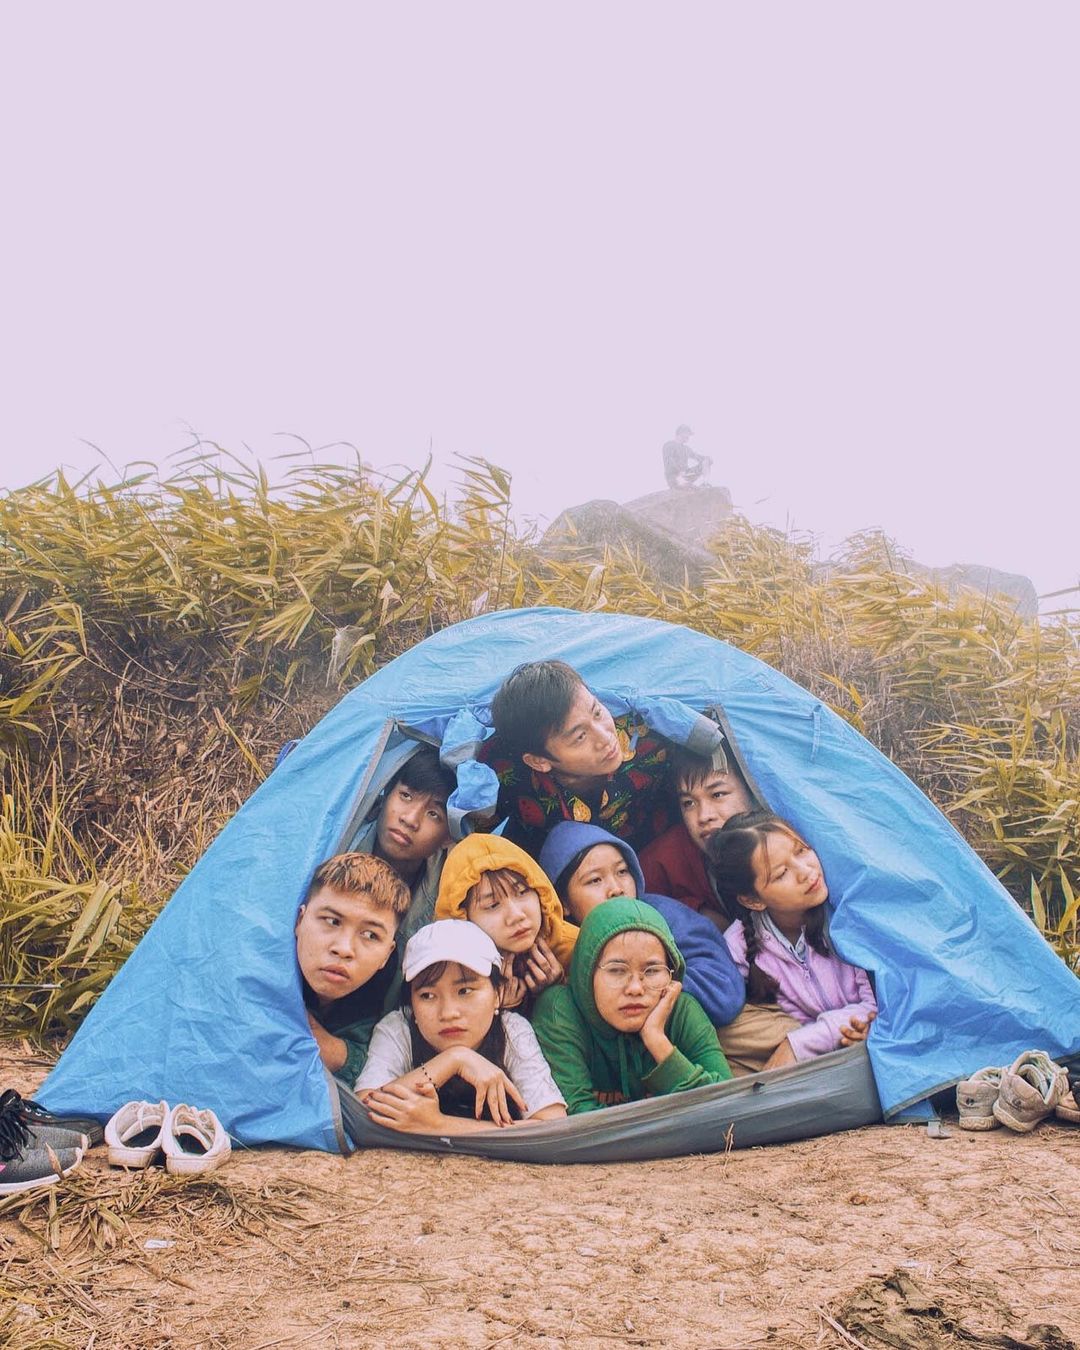 Cắm trại trên đỉnh núi Chứa Chan sẽ là trải nghiệm thú vị trong dịp cuối tuần. Ảnh: @mowfymy.